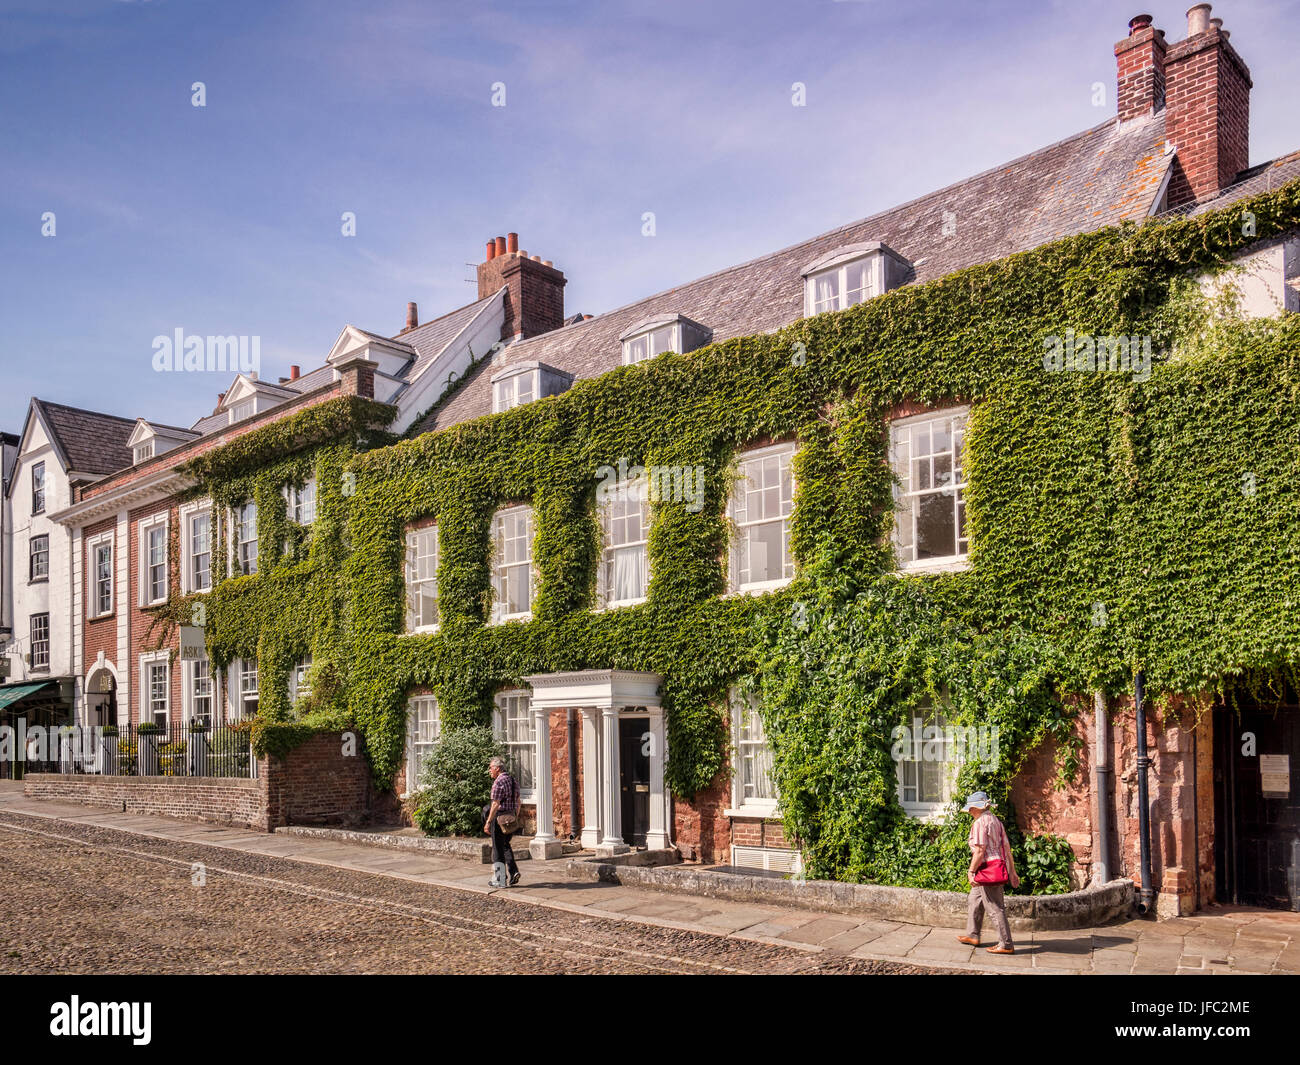 20 de junio de 2017: Exeter, Devon, Reino Unido - Casas en Catedral, cerca de Exeter, en el verde de la Catedral. Foto de stock